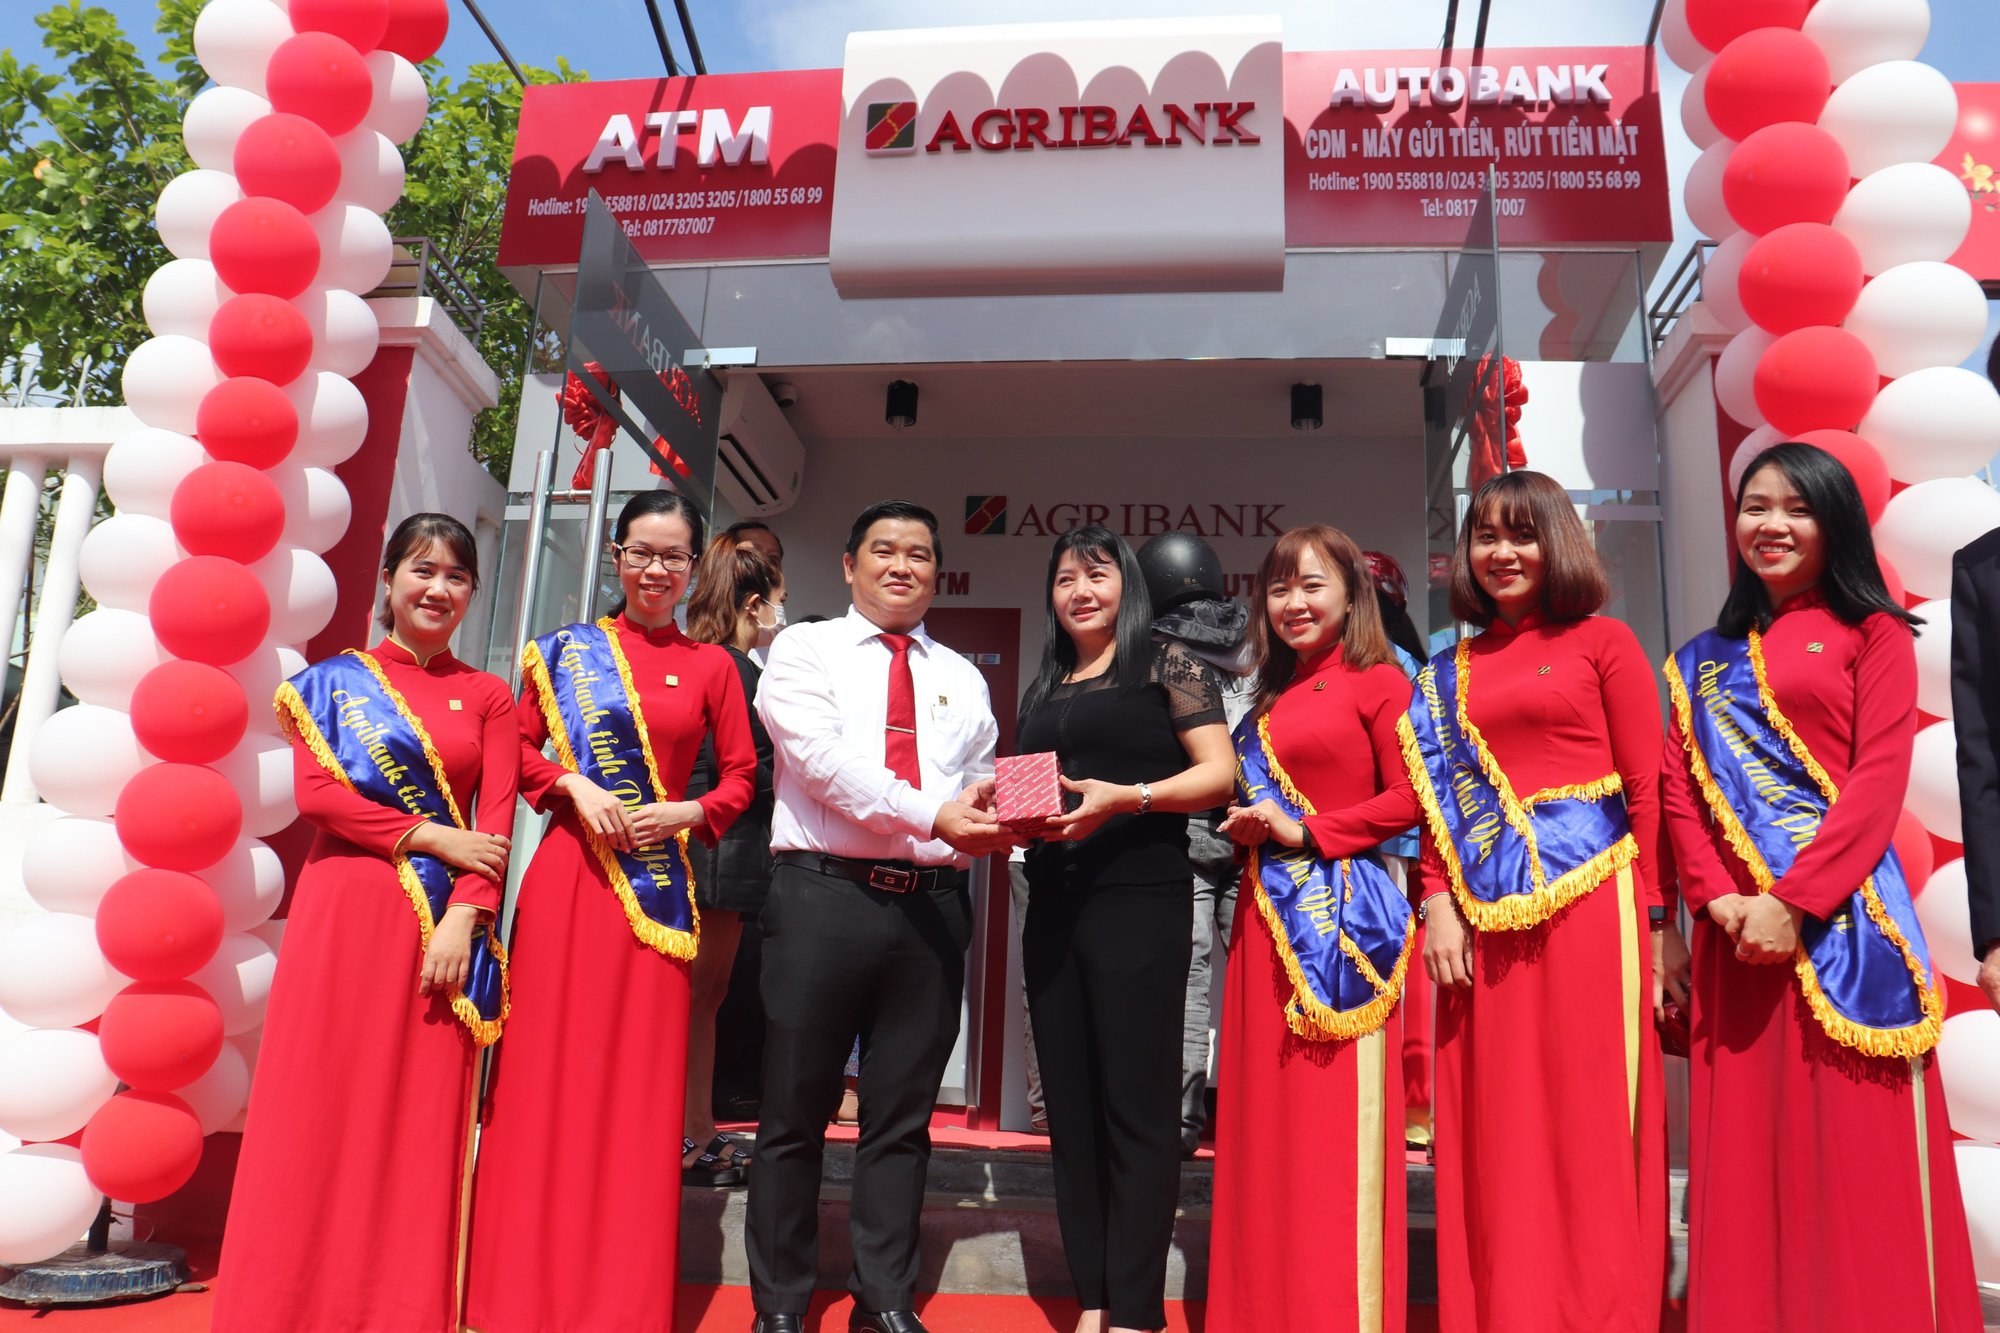 Agribank Phú Yên cung cấp dịch vụ ngân hàng hiện đại đến huyện miền núi Sông Hinh - Ảnh 2.